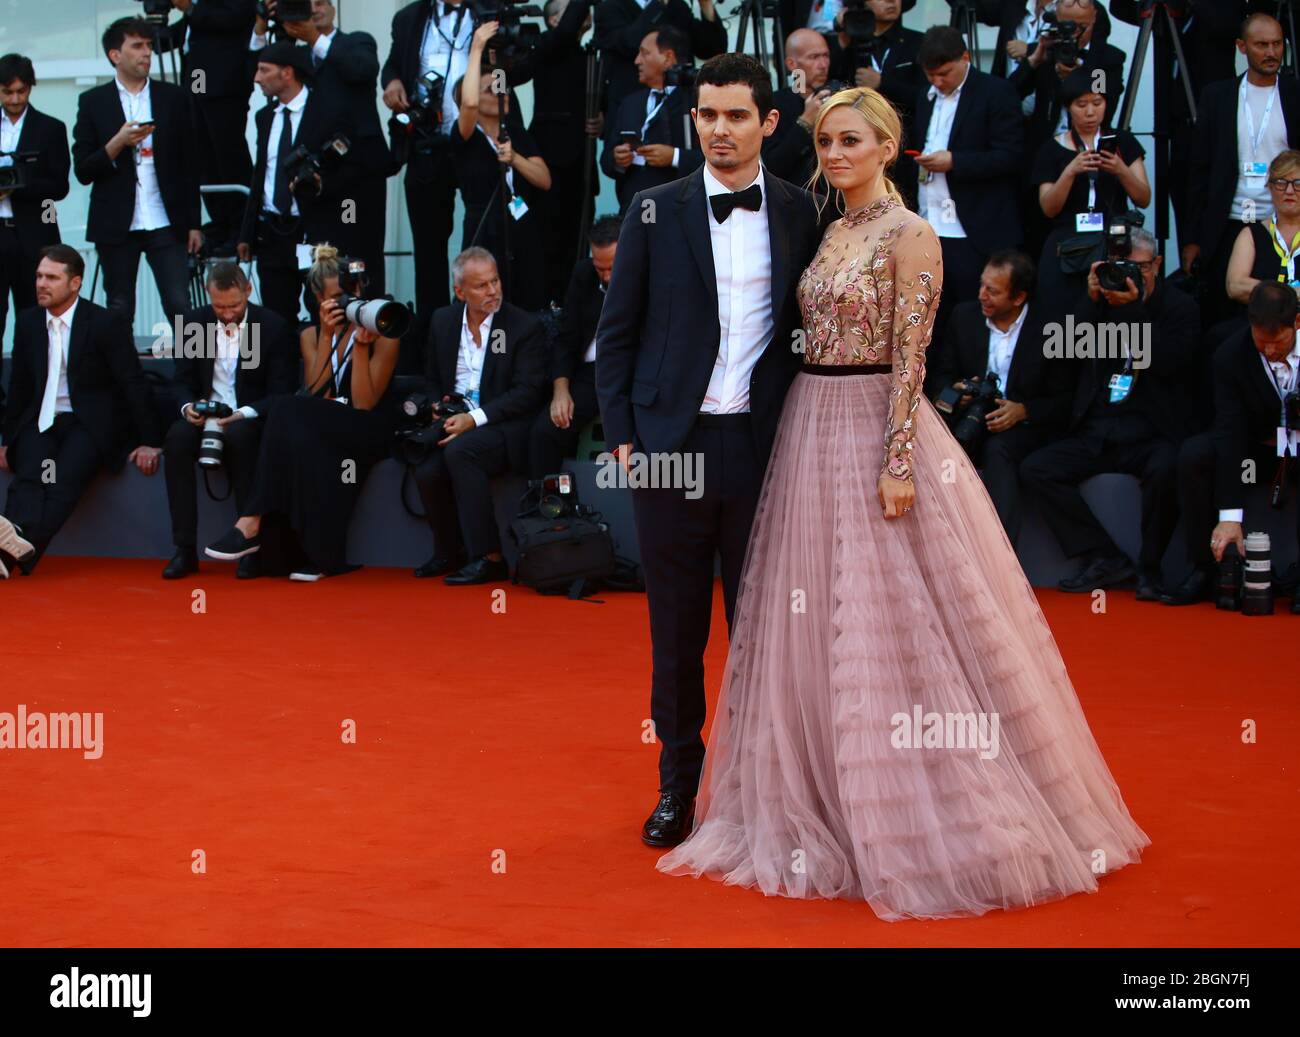 VENISE, ITALIE - 29 AOÛT : Olivia Hamilton et Damien Chazelle pendant le tapis rouge de la projection du "Premier Homme" pendant le 75ème Festival du Film de Venise Banque D'Images